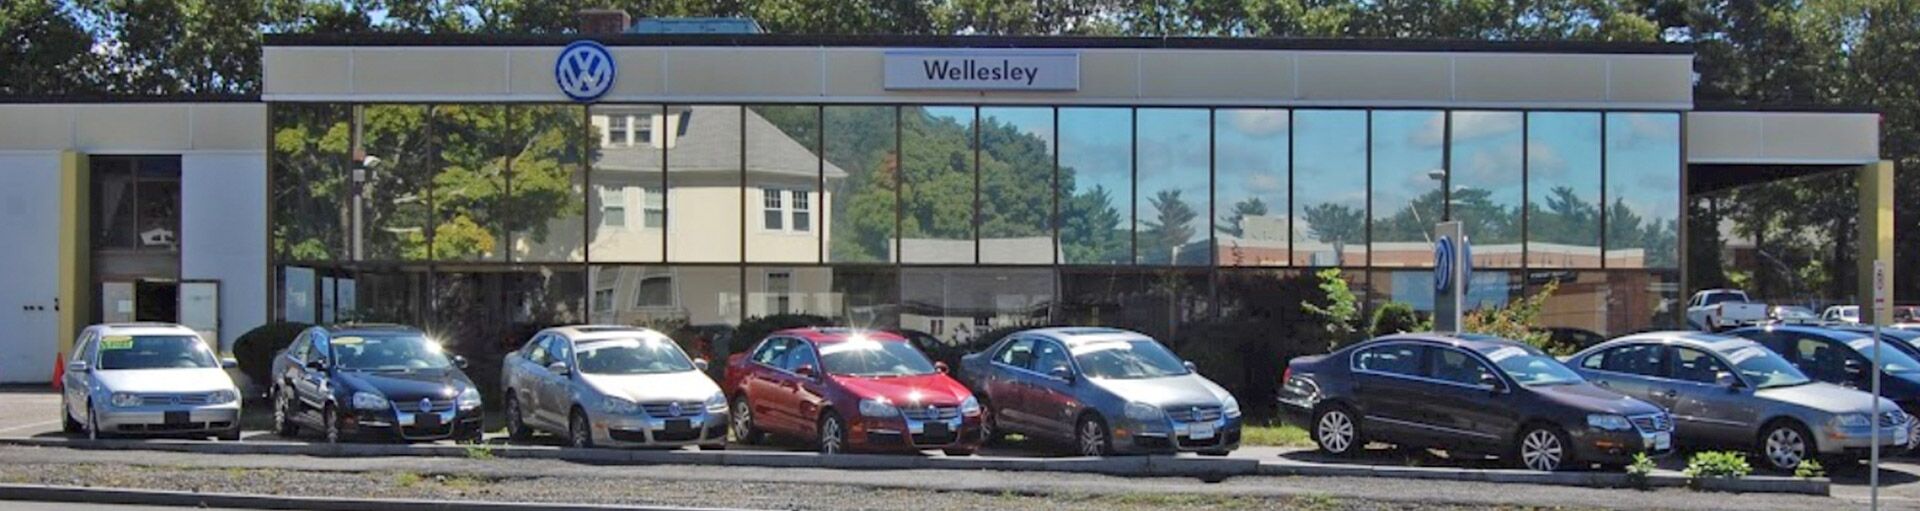 Wellesley Volkswagen Filter Services